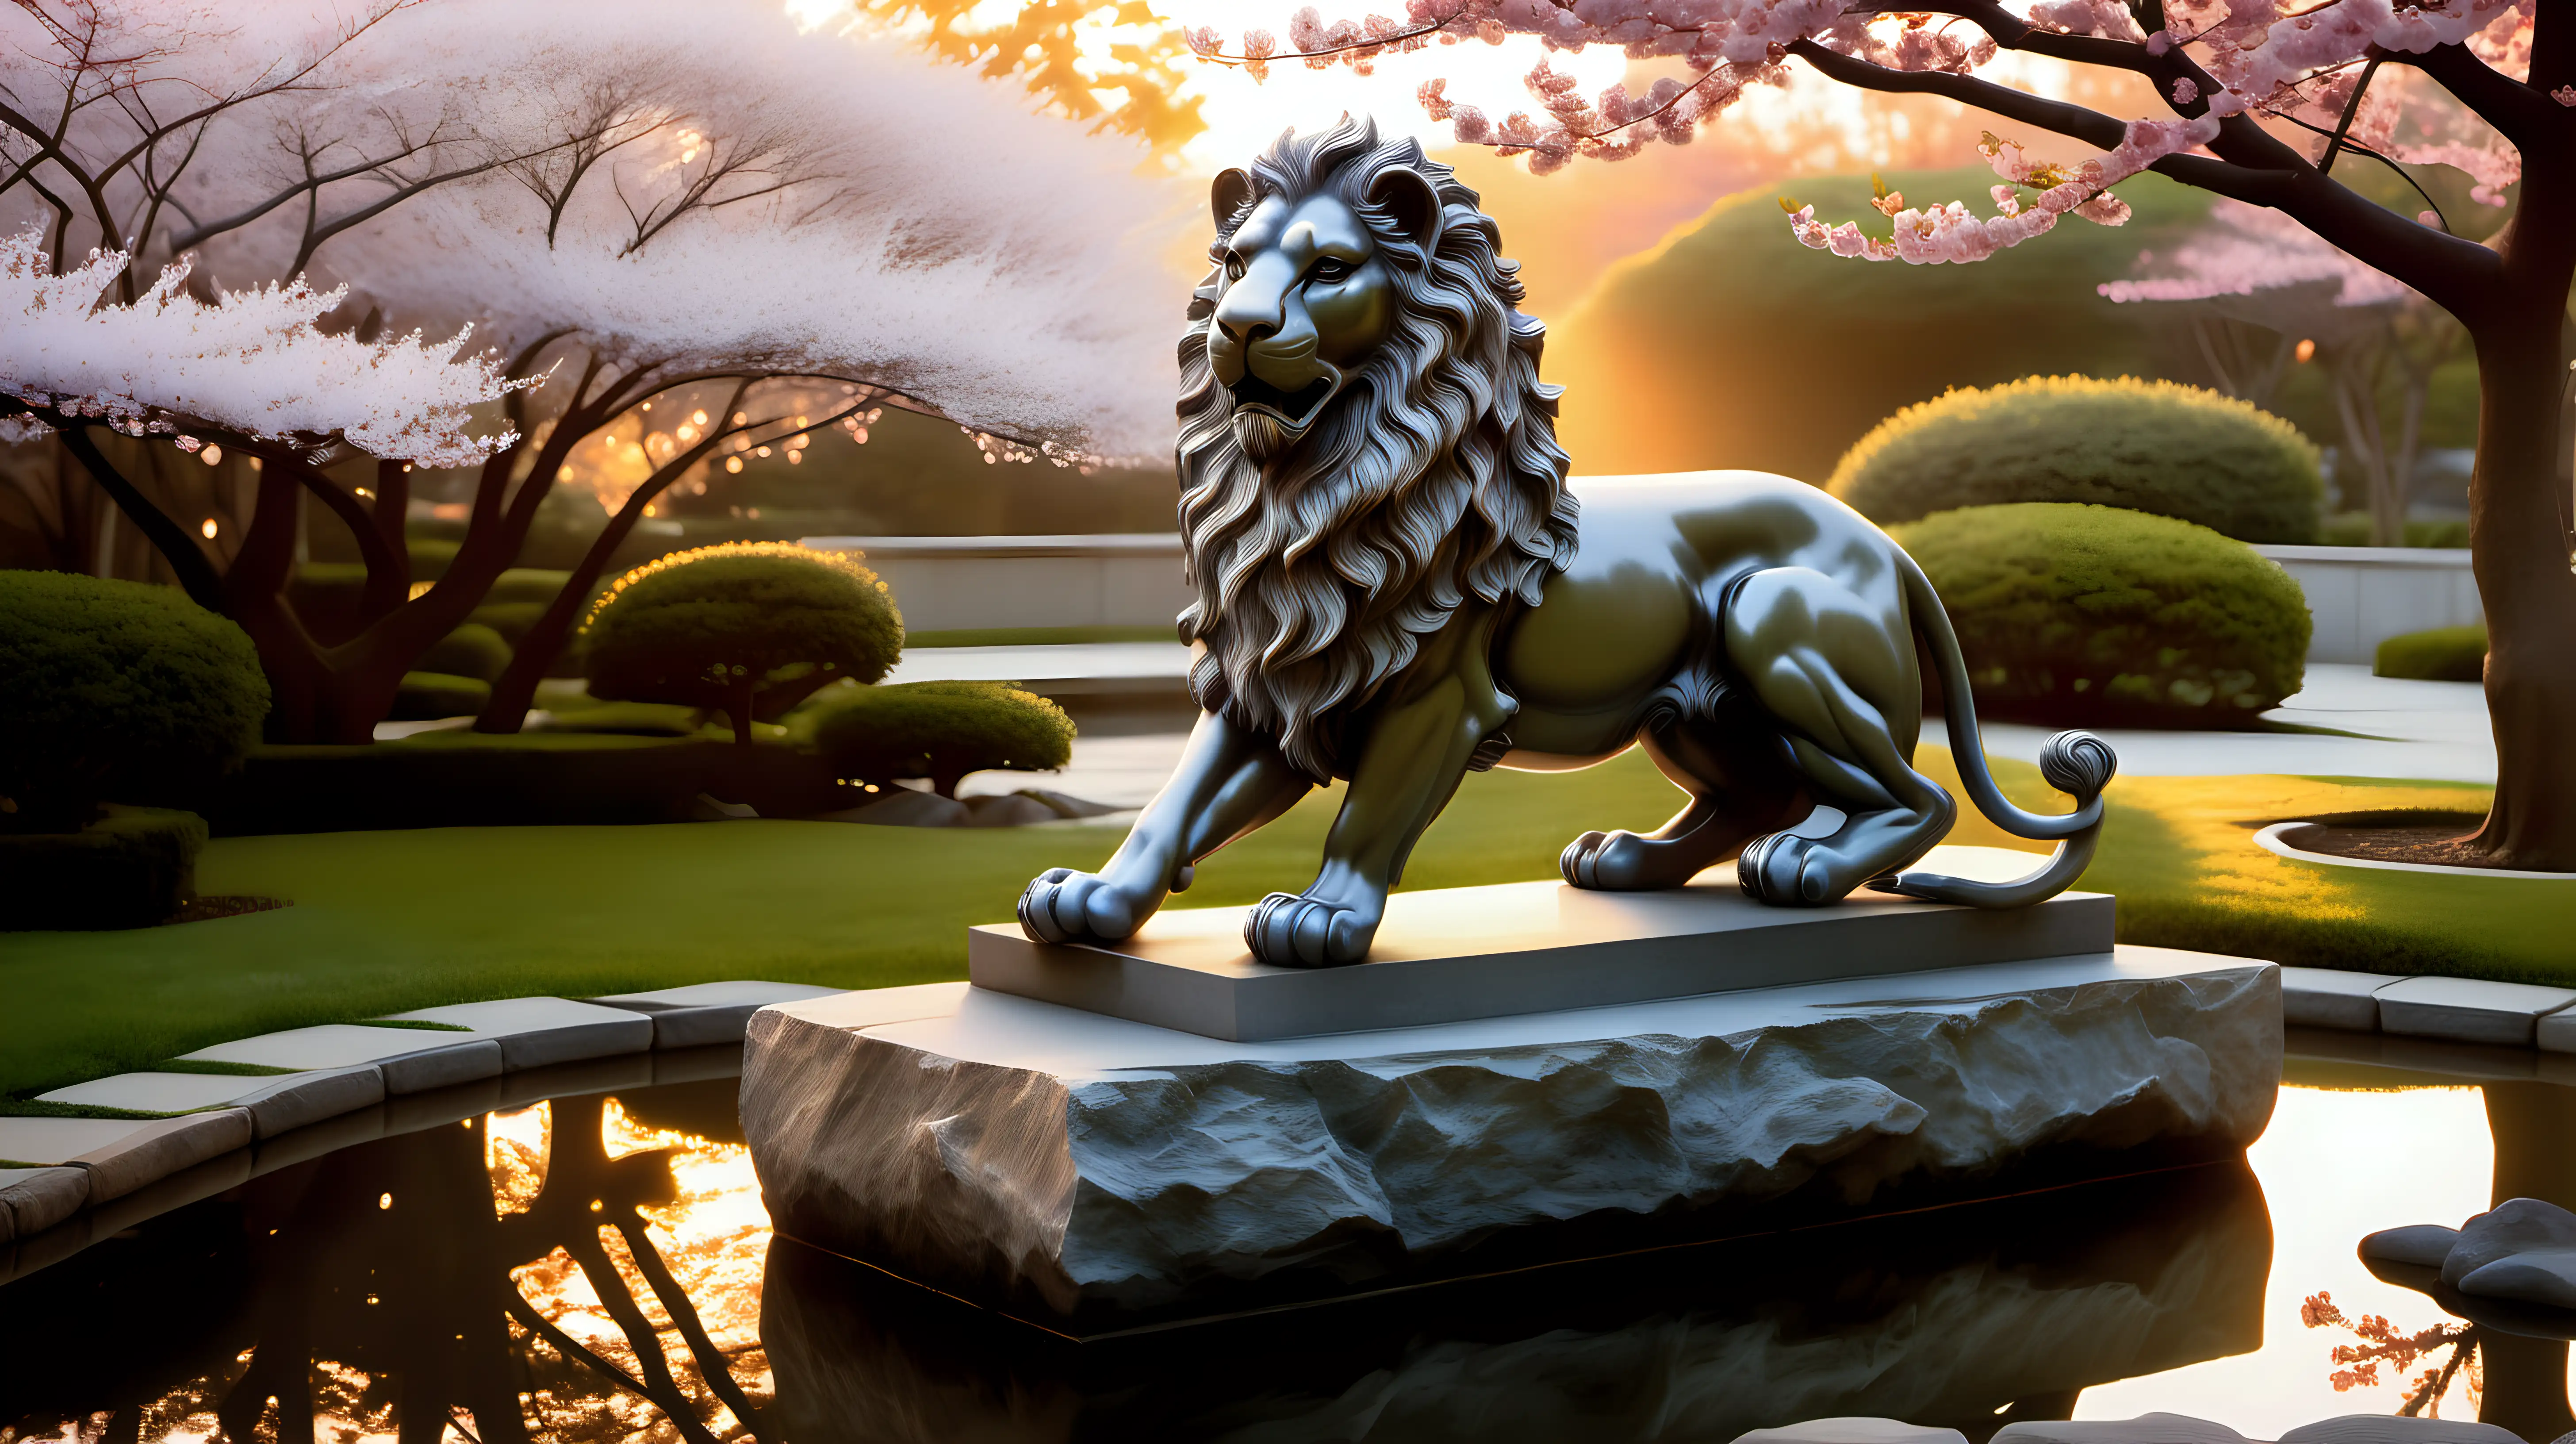 Serene Stone Lion Statue in Japanese Garden at Dawn